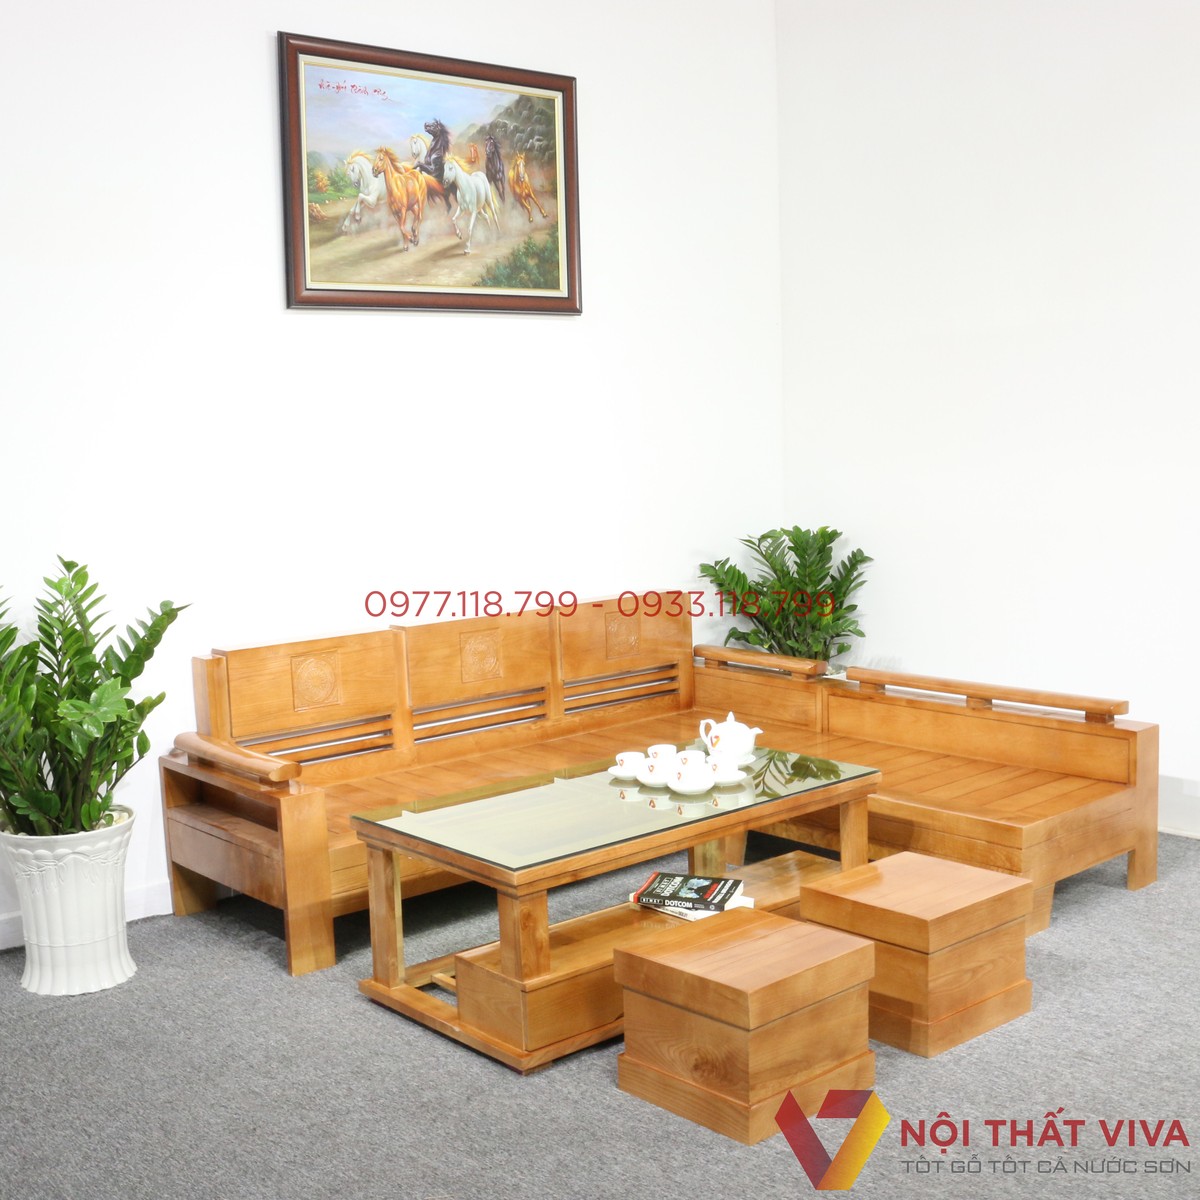 Với mức giá hợp lý, ghế sofa gỗ đẹp không chỉ tạo nên vẻ đẹp hiện đại, sang trọng cho phòng khách mà còn đảm bảo tính tiện nghi cho gia đình. Tận hưởng không gian gia đình ấm cúng và đẹp mắt với sản phẩm này.